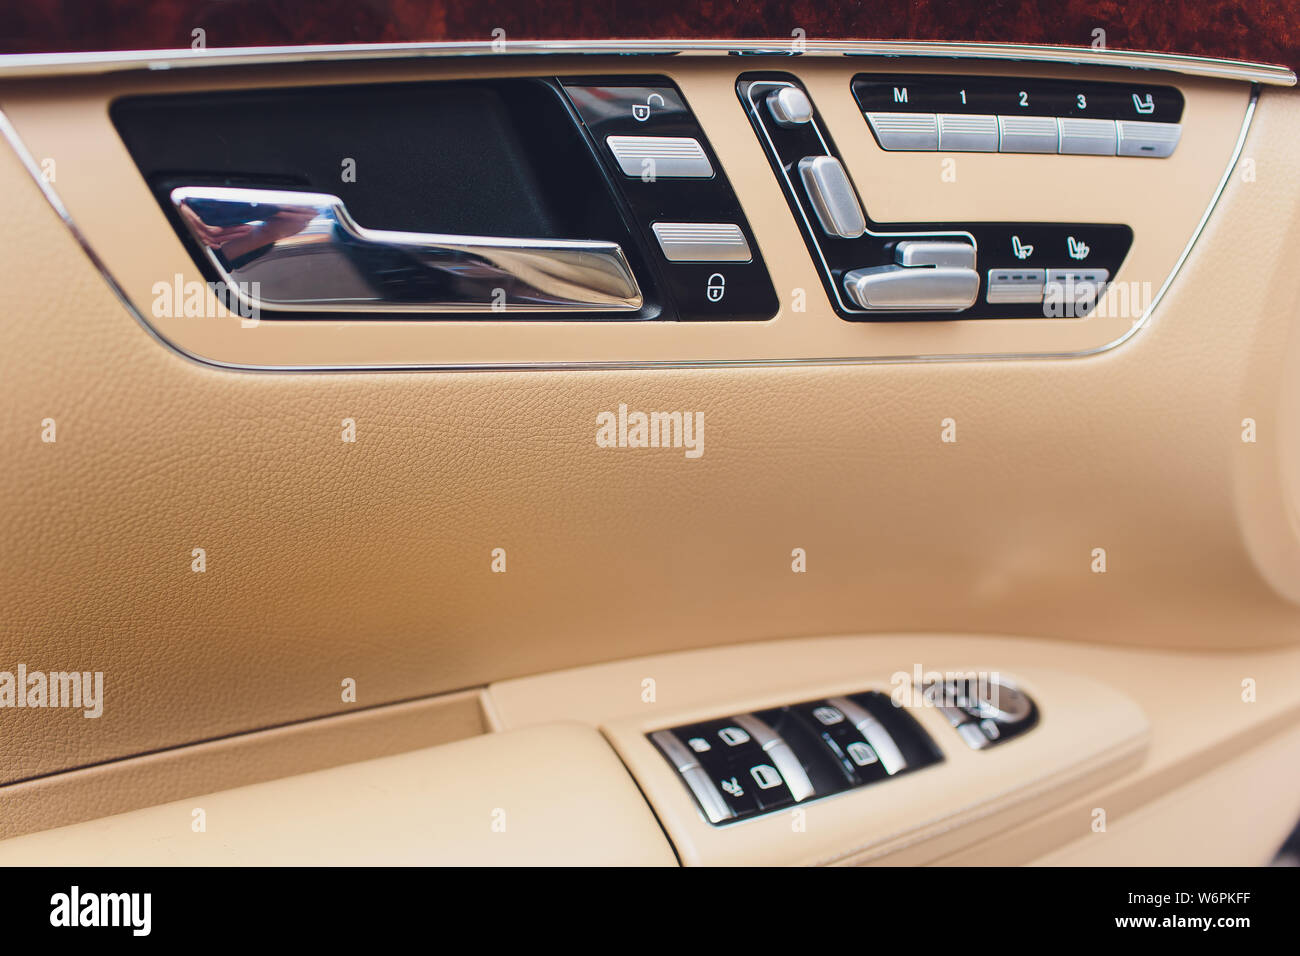 Modernes Auto innen Armlehne mit Fenster Control Panel, Door Lock-Button.  Details im Innenraum Stockfotografie - Alamy